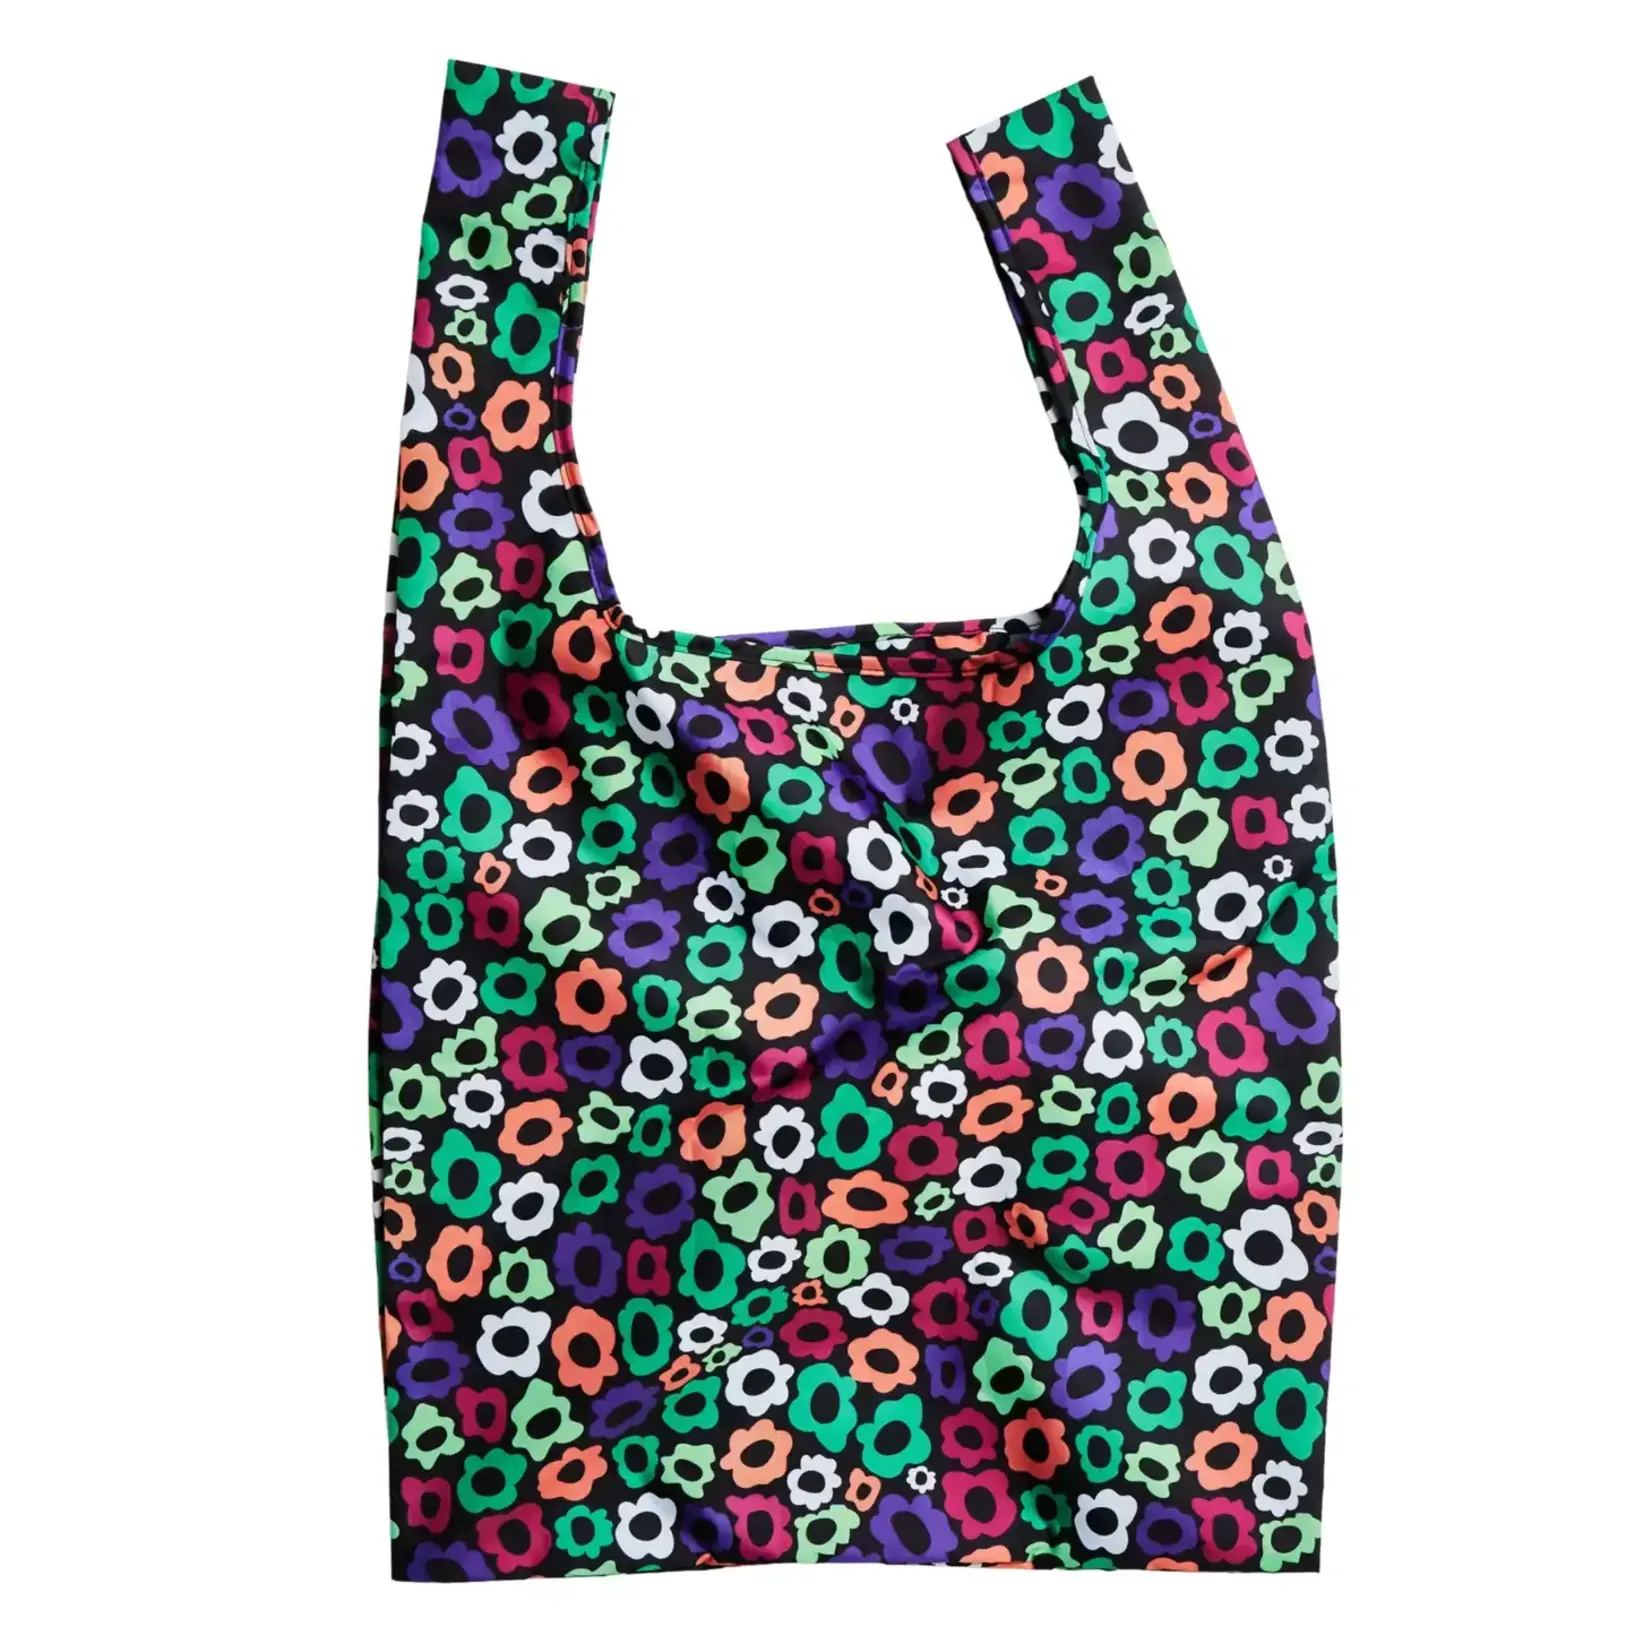 https://cdn.shoplightspeed.com/shops/657021/files/55930694/1652x1652x2/flower-maze-eco-friendly-reusable-bag.jpg